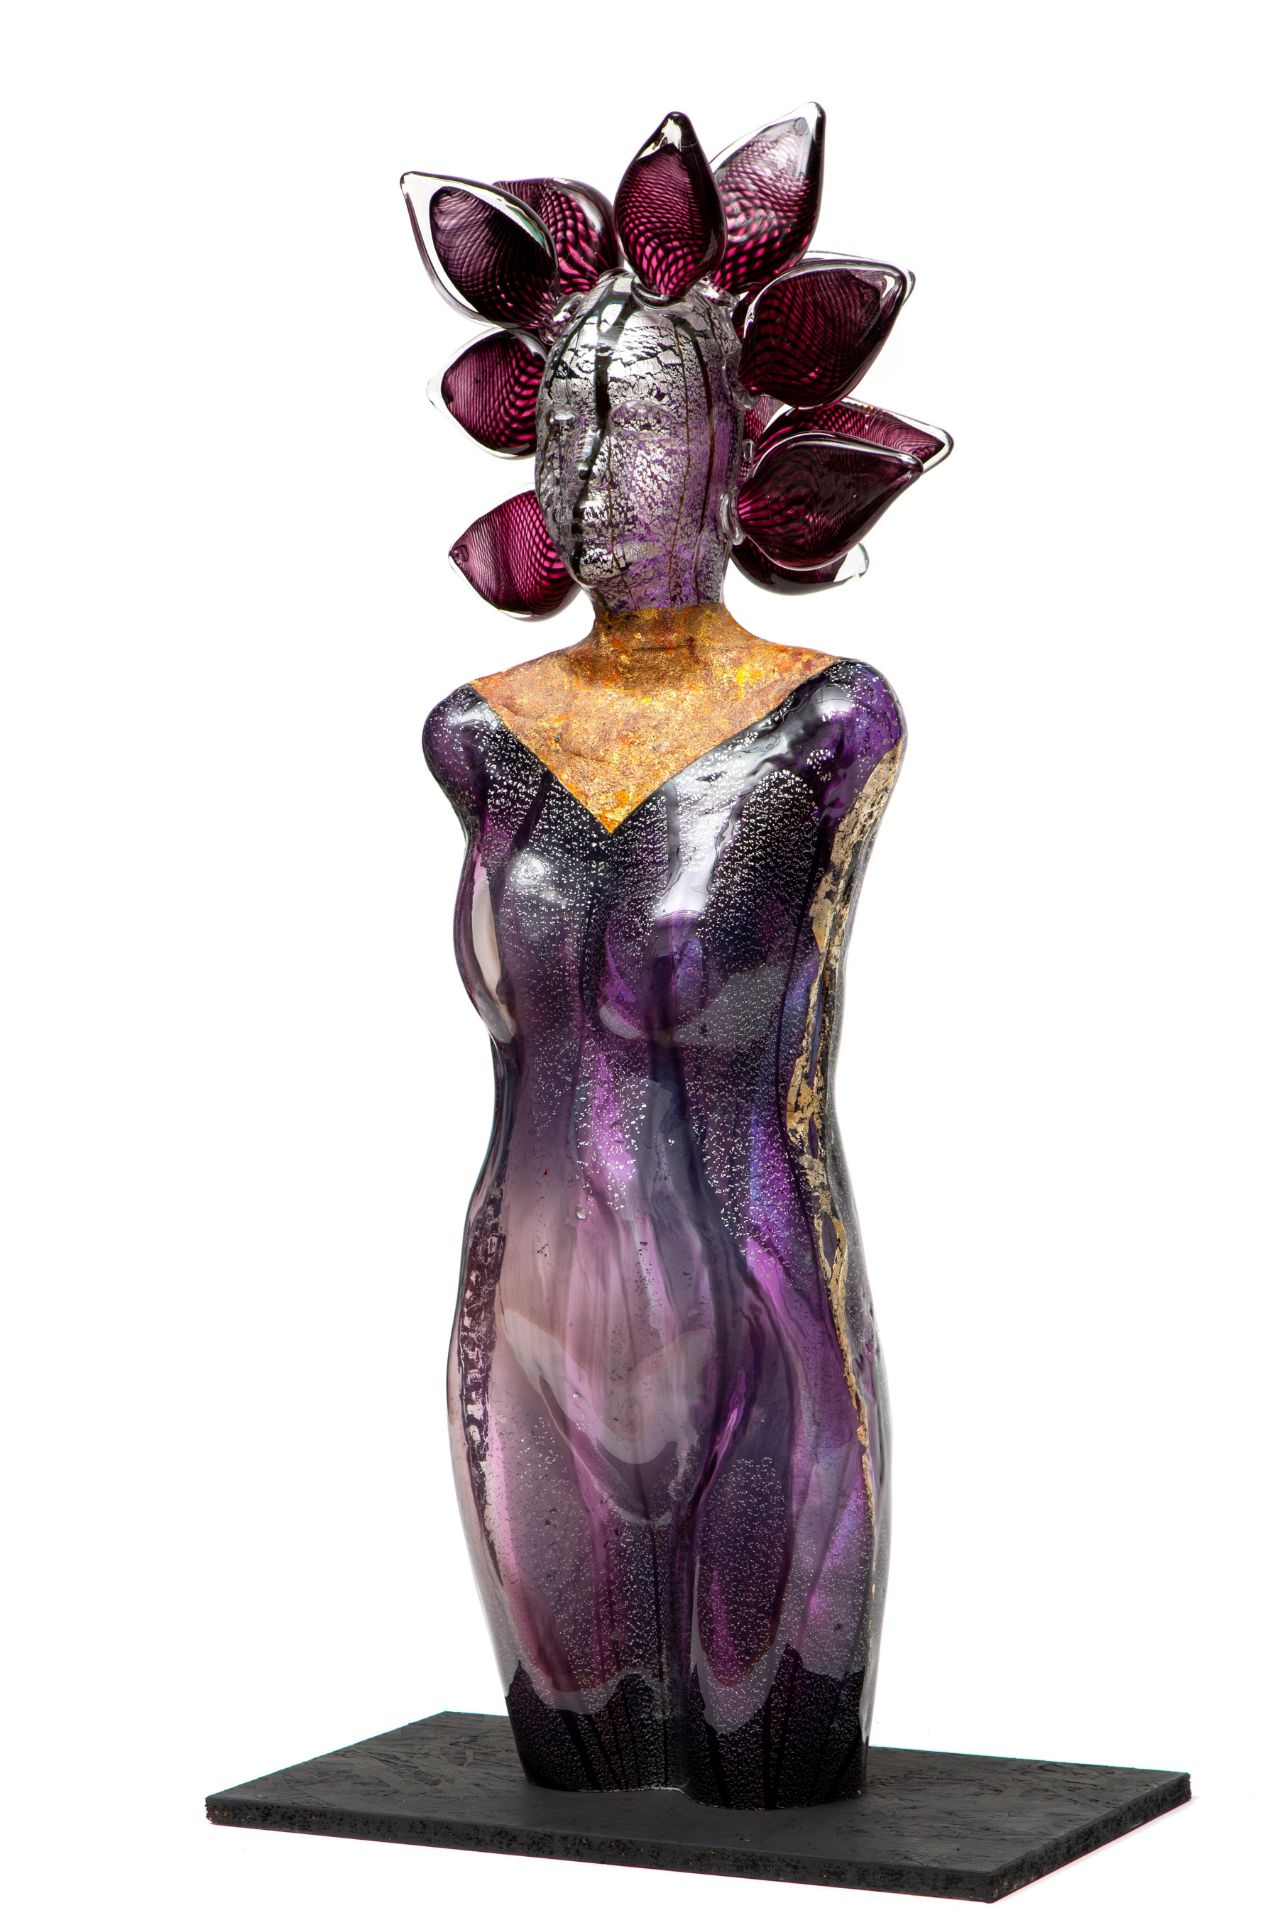 Richard Price (1960), paars glazen sculptuur van vrouw met hoofdtooi.